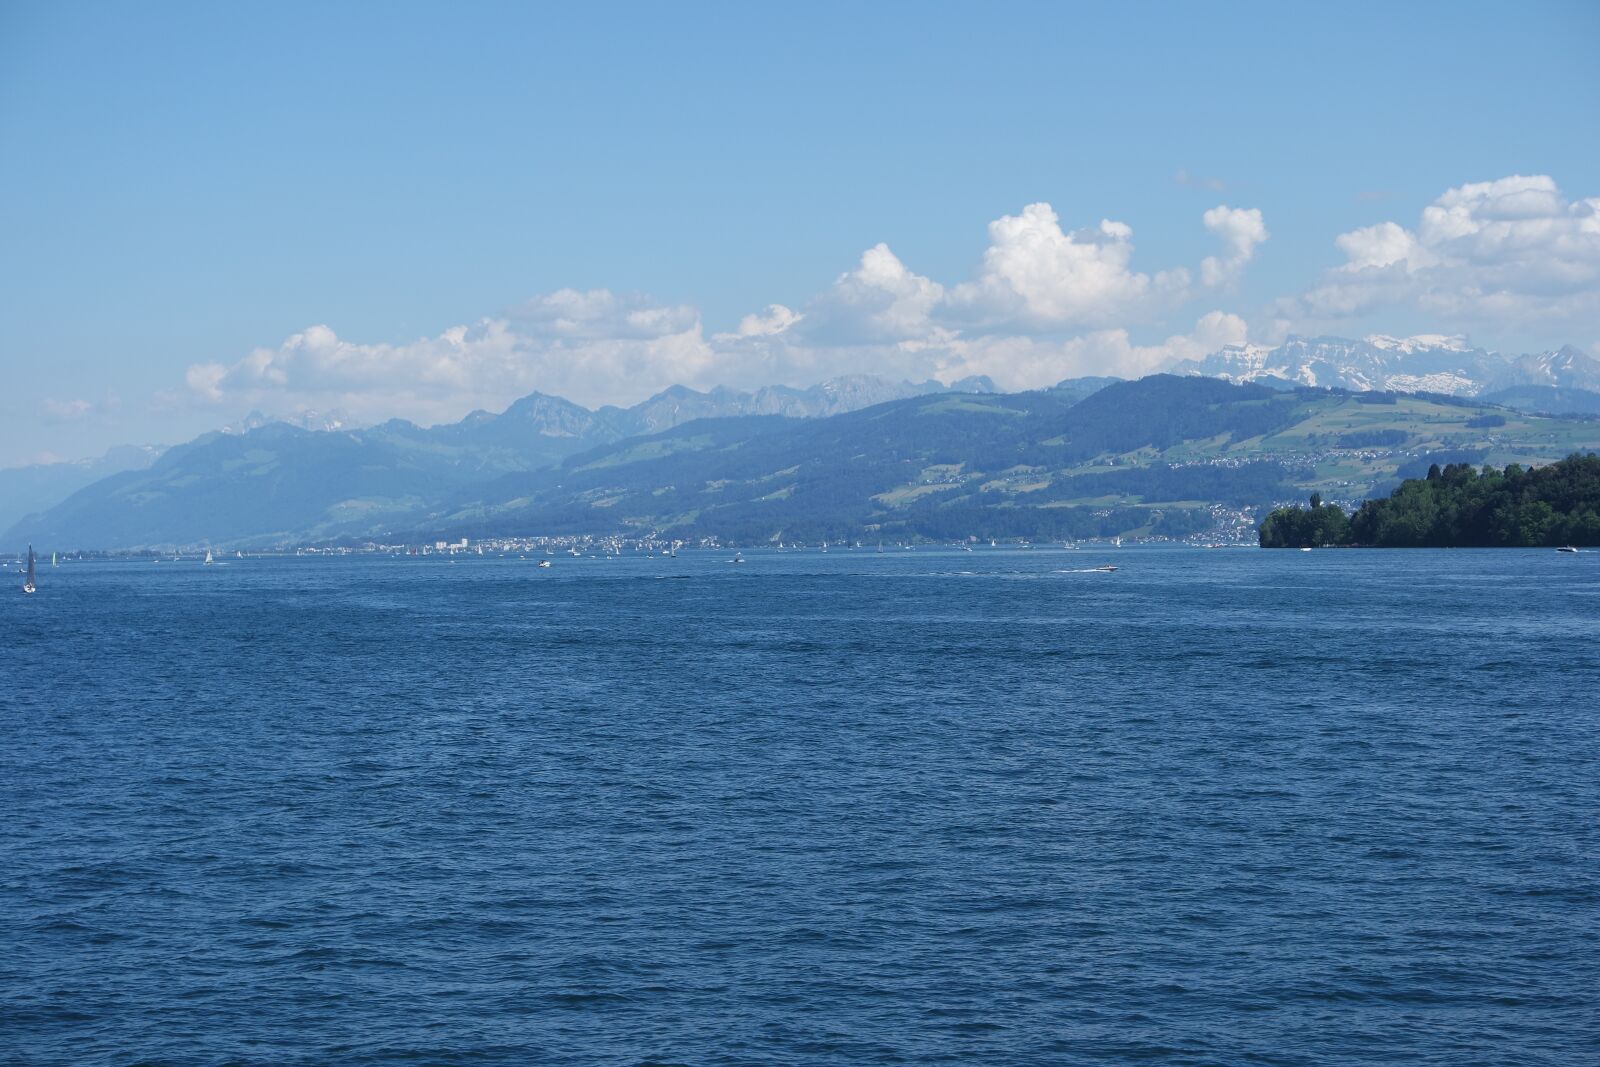 Samsung NX 16-50mm F3.5-5.6 Power Zoom ED OIS sample photo. Zurich, lake zurich, water photography